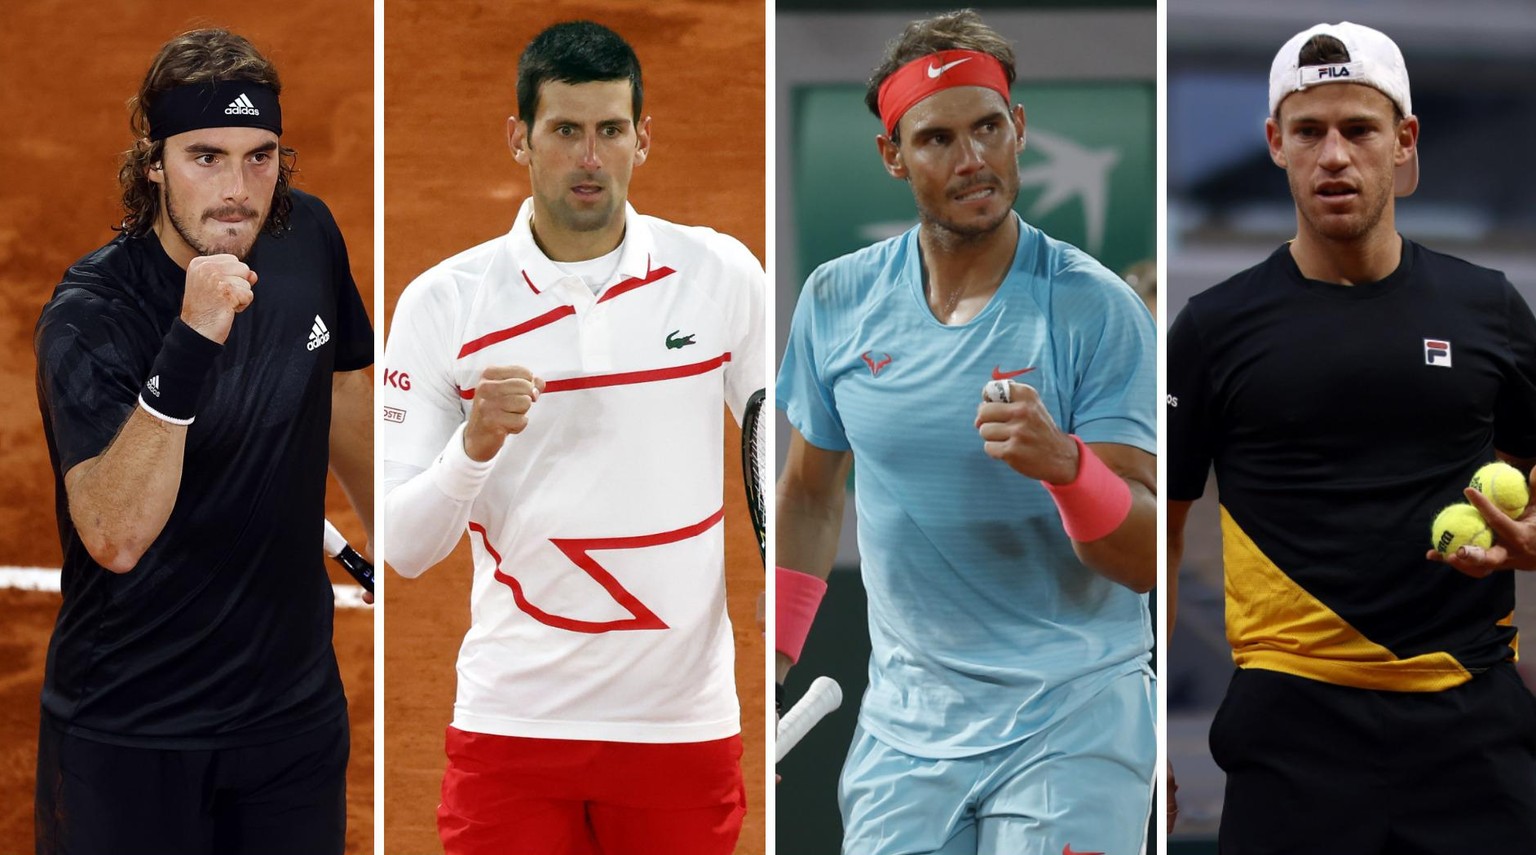 Welcher dieser vier Spieler darf sich am Ende French-Open-Sieger nennen?